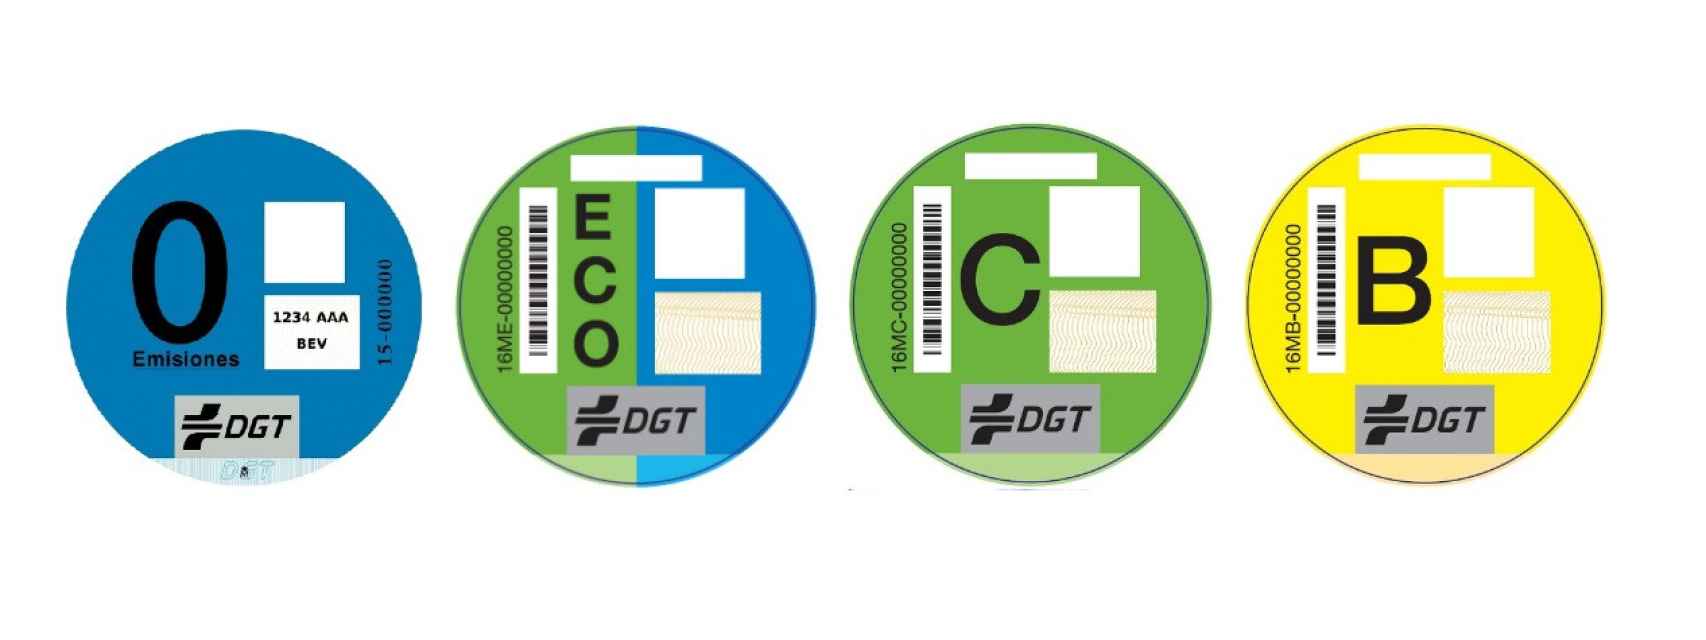 Estos son los distintivos ambientales de la DGT para los vehículos.